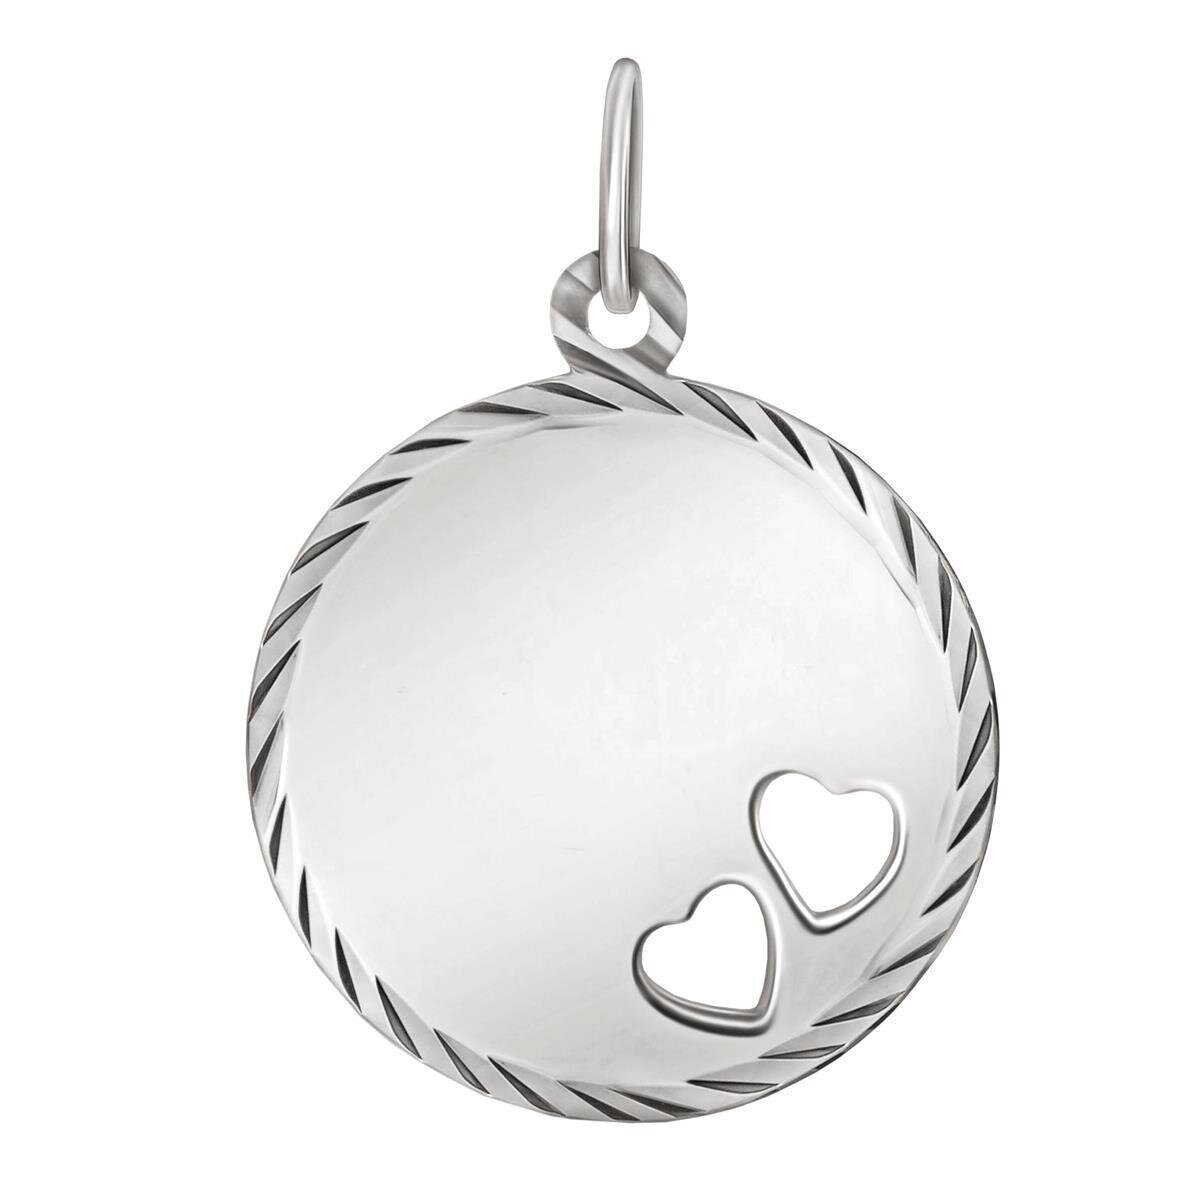 Silberner Anhänger Gravurplatte 16 mm Ø rand diamantiert mit HerzenE cht Silber 925 mit Gravur